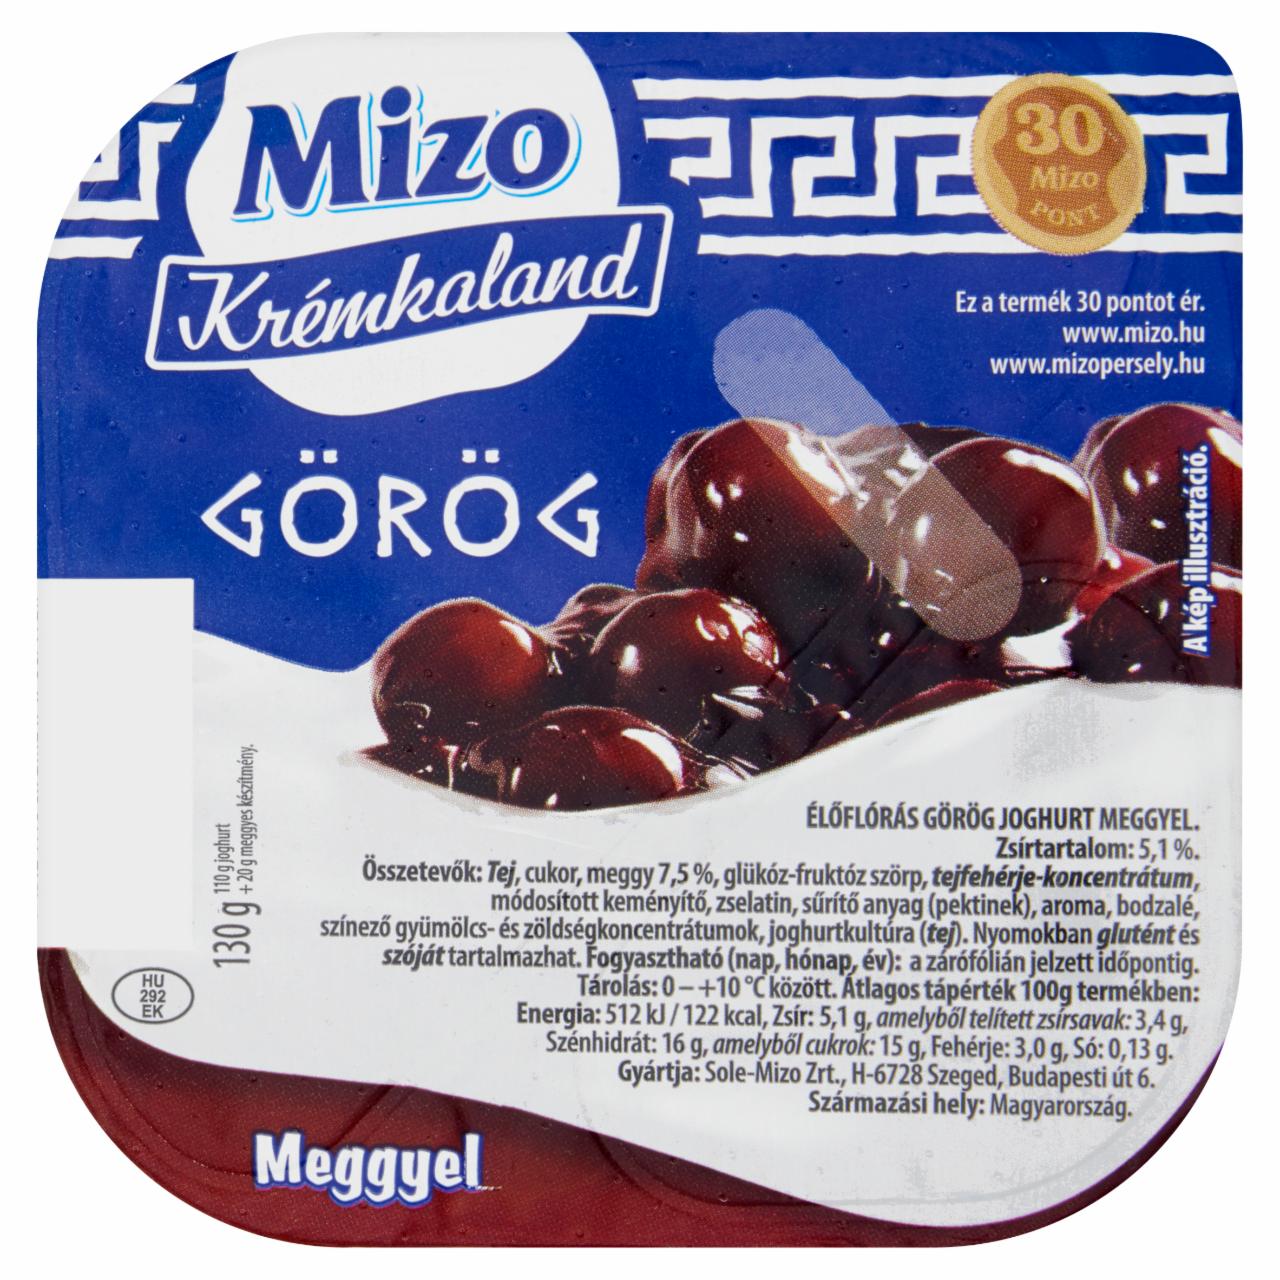 Képek - Mizo Krémkaland görög joghurt meggyel 130 g